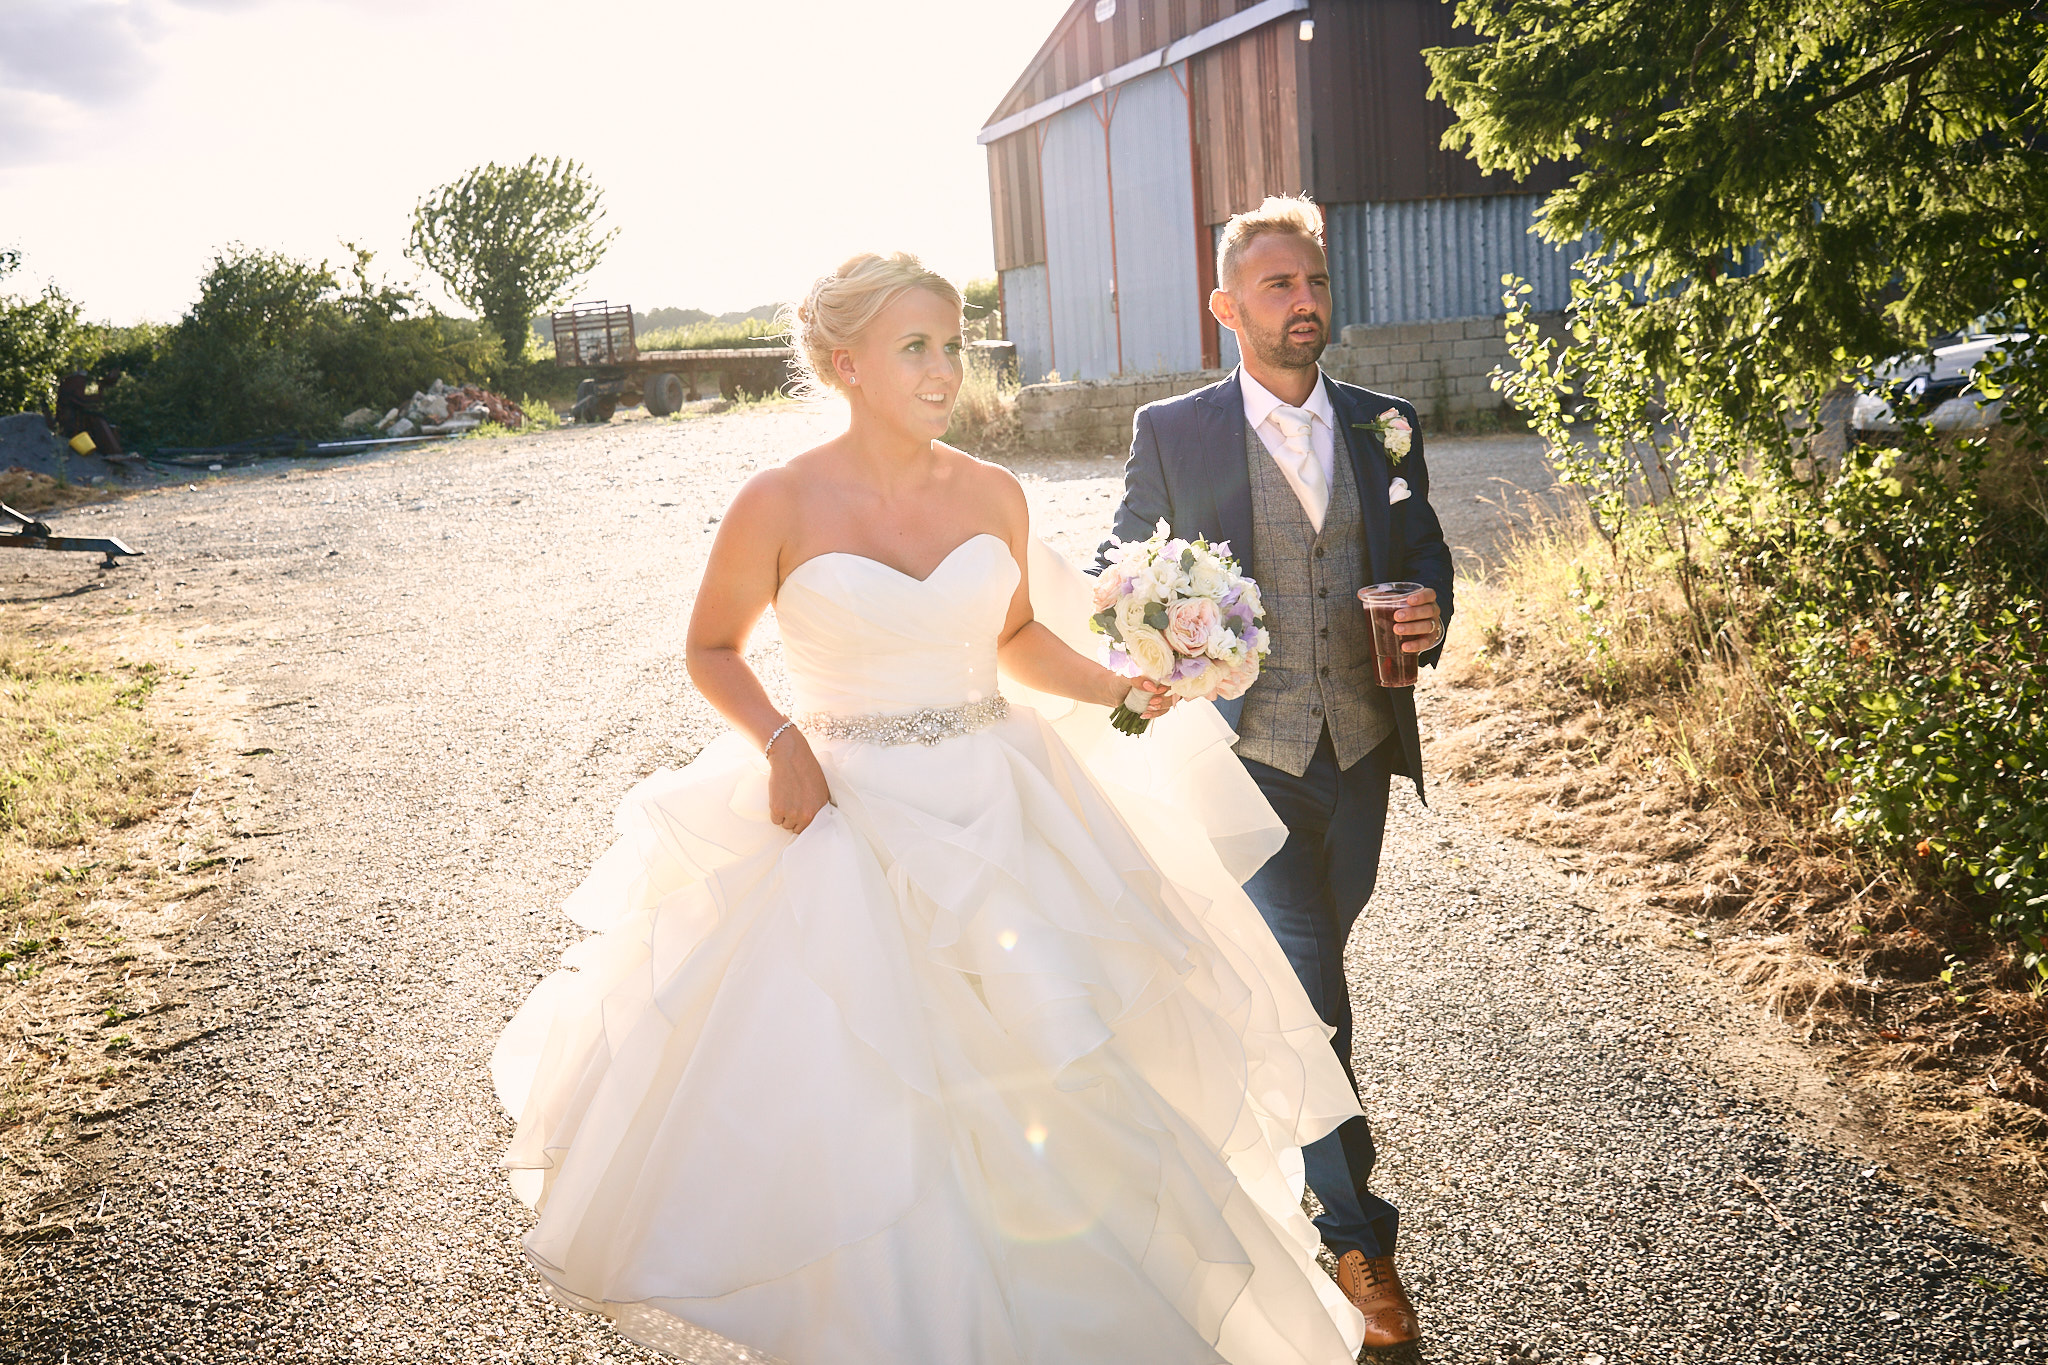 Glebe Farm Barn Wedding Venue